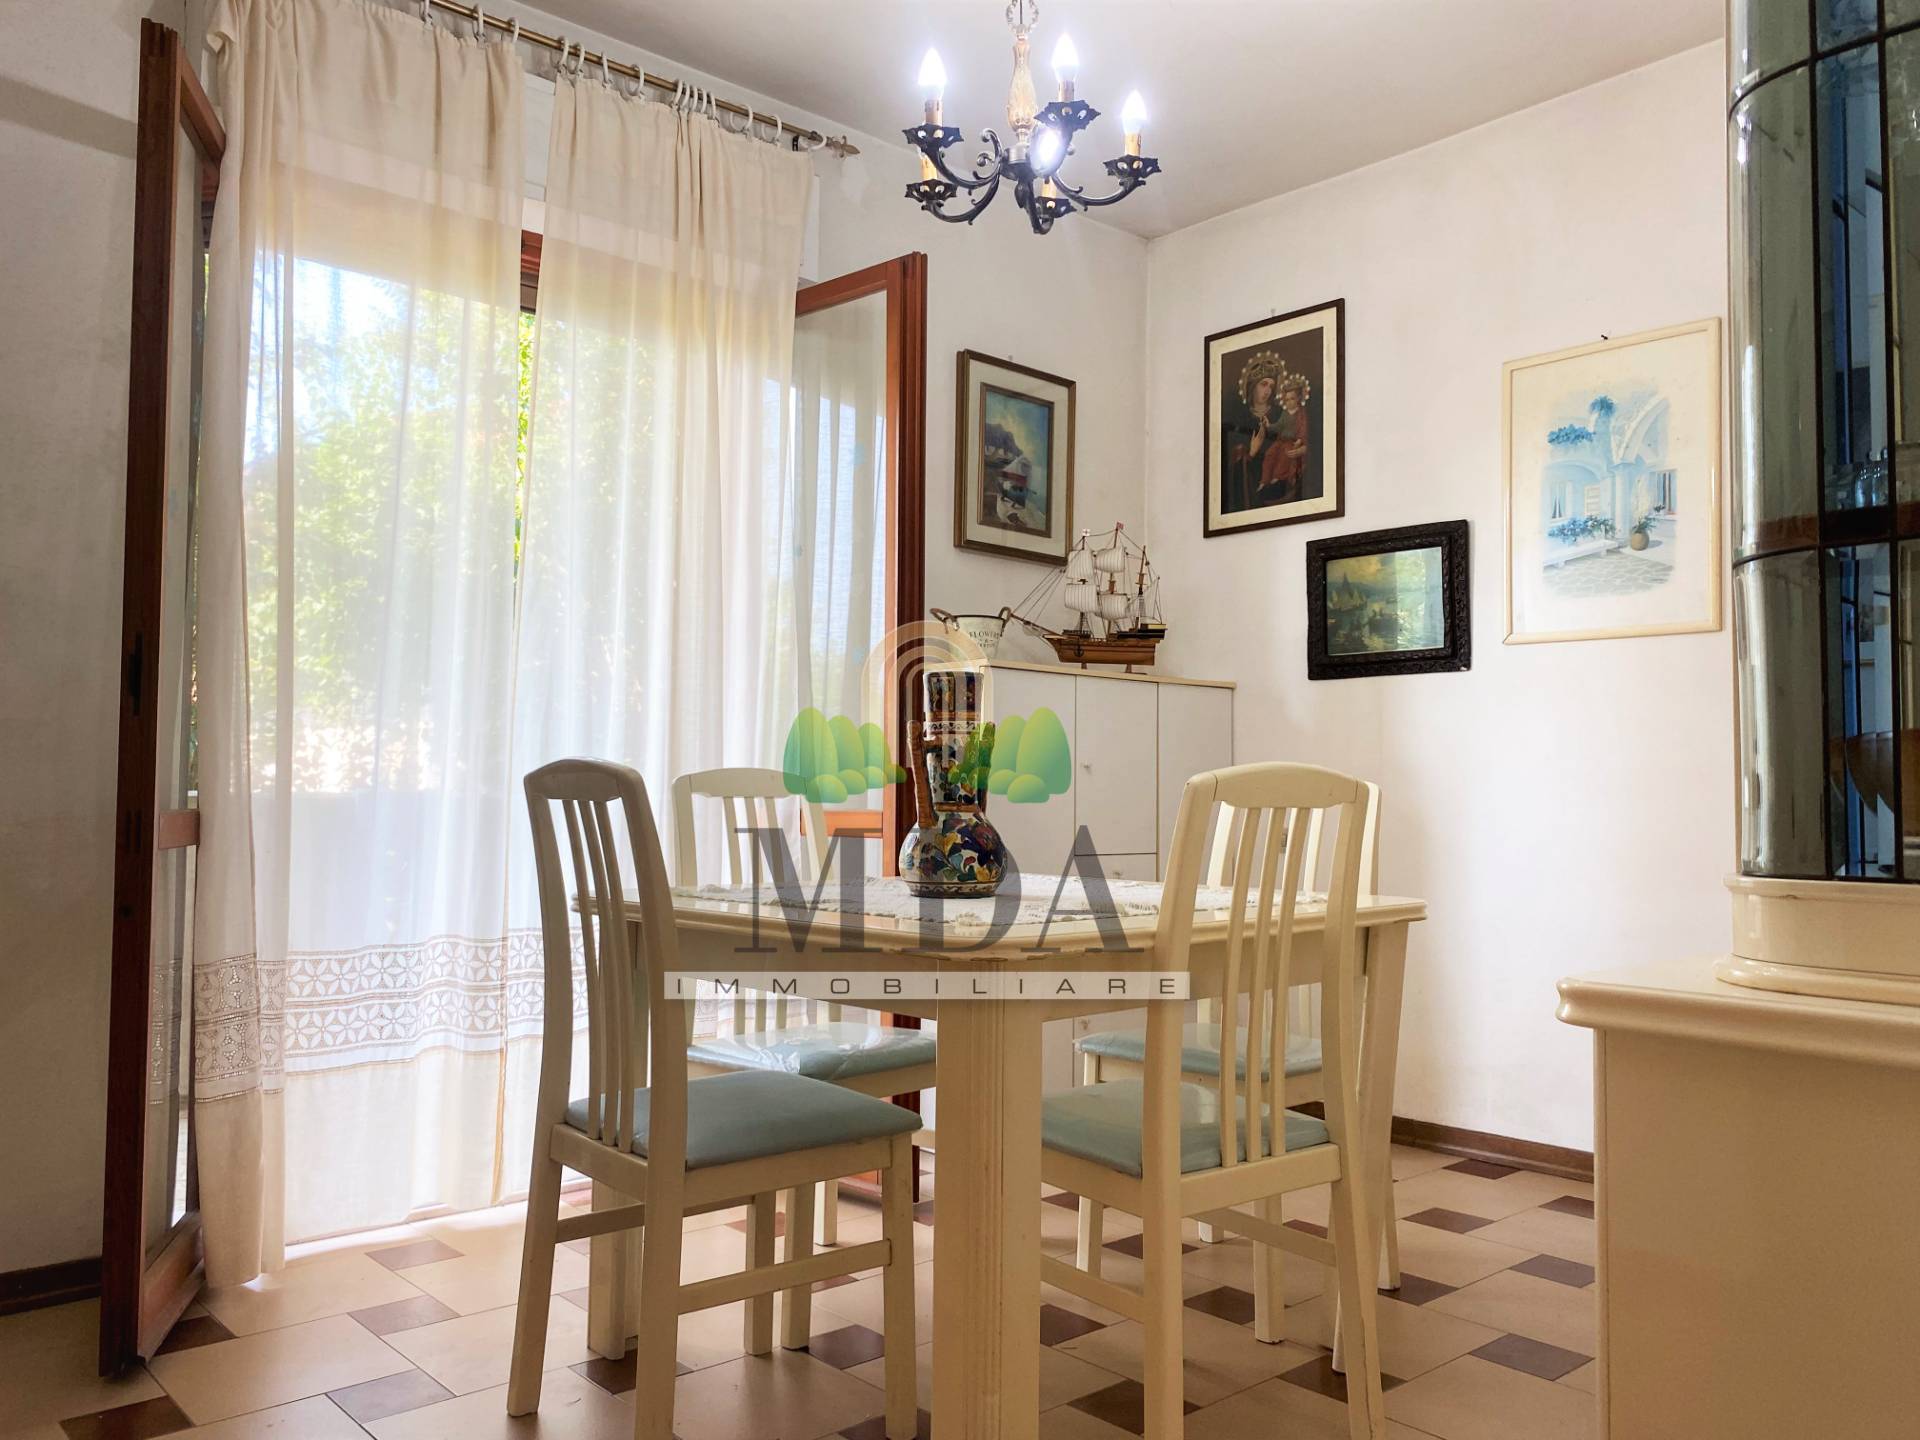 Appartamento in vendita a Martinsicuro, 3 locali, prezzo € 69.000 | PortaleAgenzieImmobiliari.it